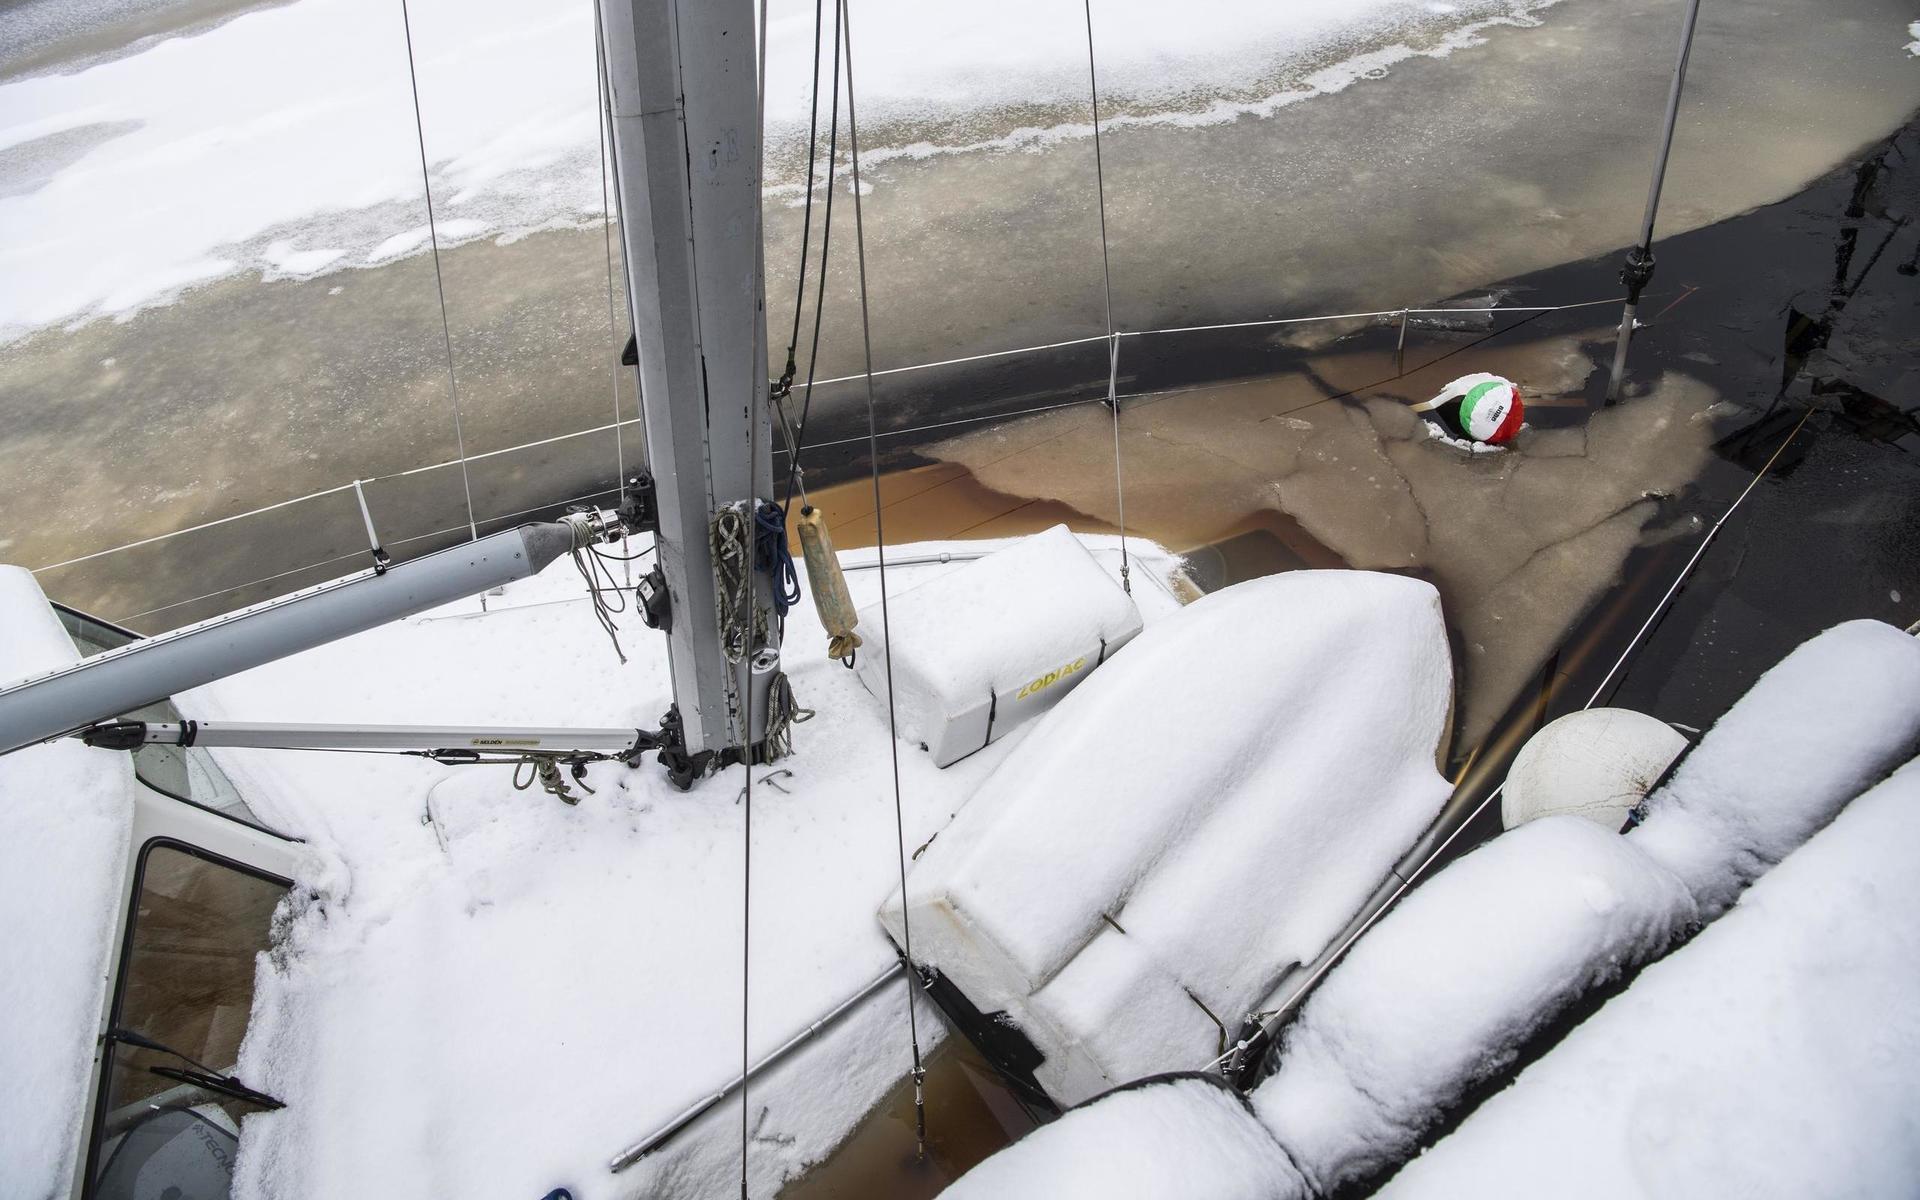 Båt i Nissan läcker in vatten – räddningsarbete pågår
En segelbåt i Nissan tar in vatten. Räddningstjänsten är på plats och länspumpar båten.